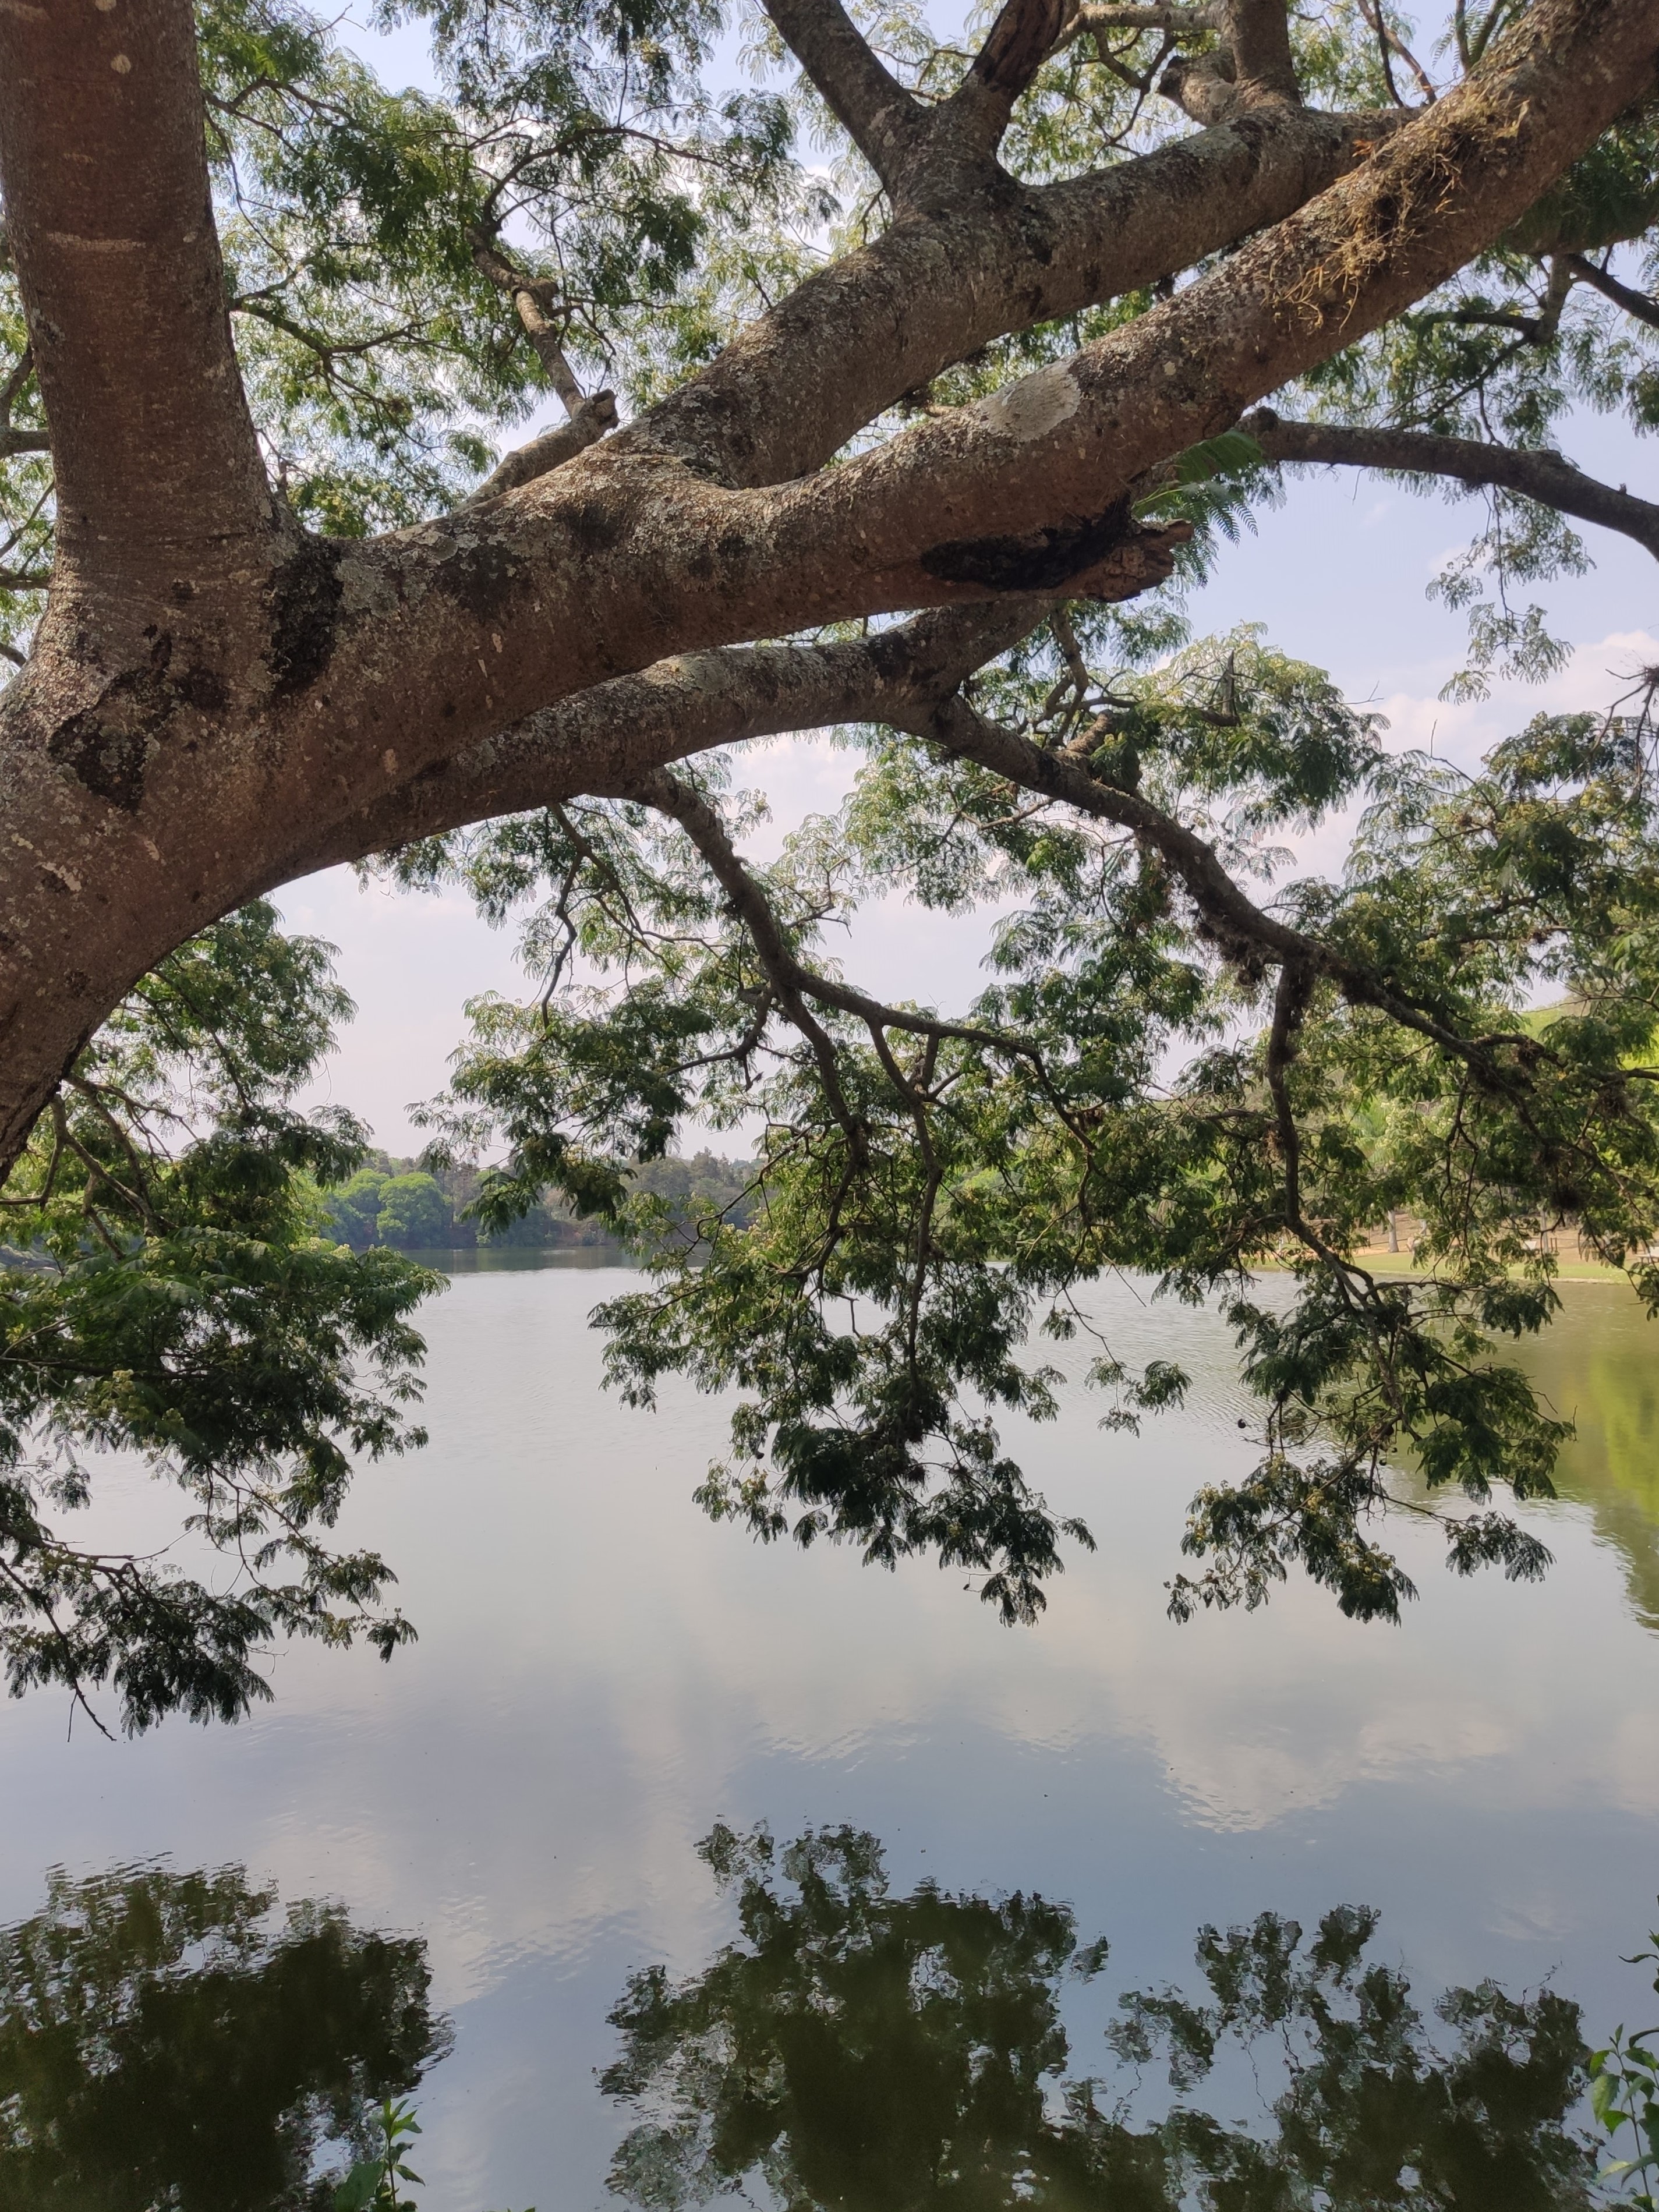 uma foto de um lago na sombra de uma árvore bem grandona, com galhos grossos e folhas bonitas, meio que se debruçando no lago. a água reflete o céu e as nuvens